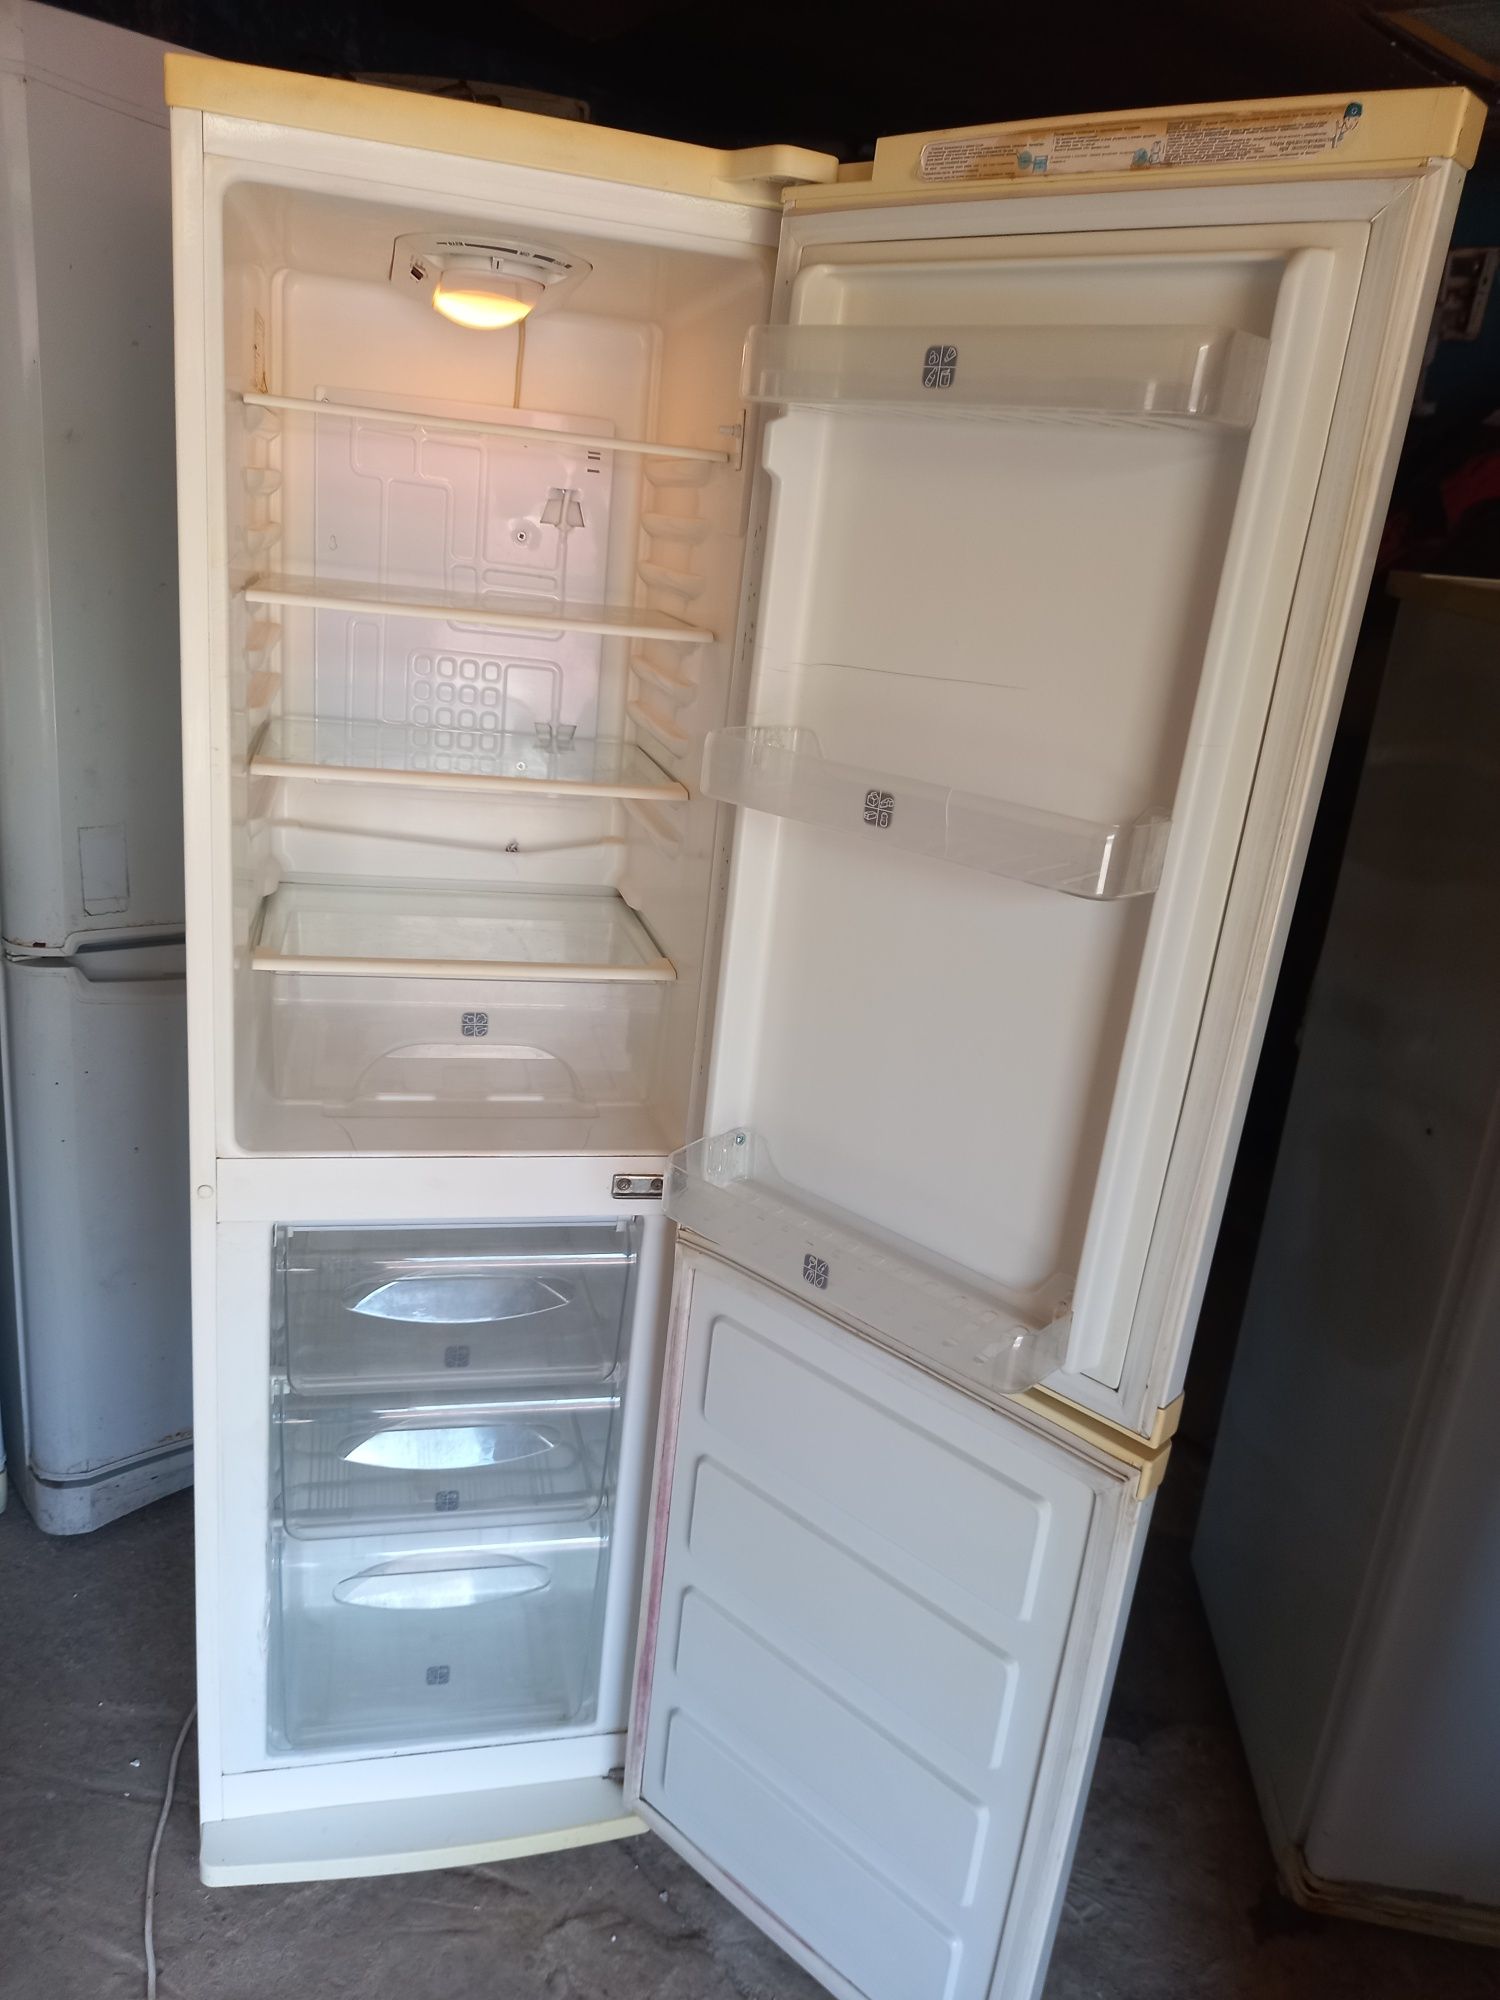 Холодильник "Samsung"